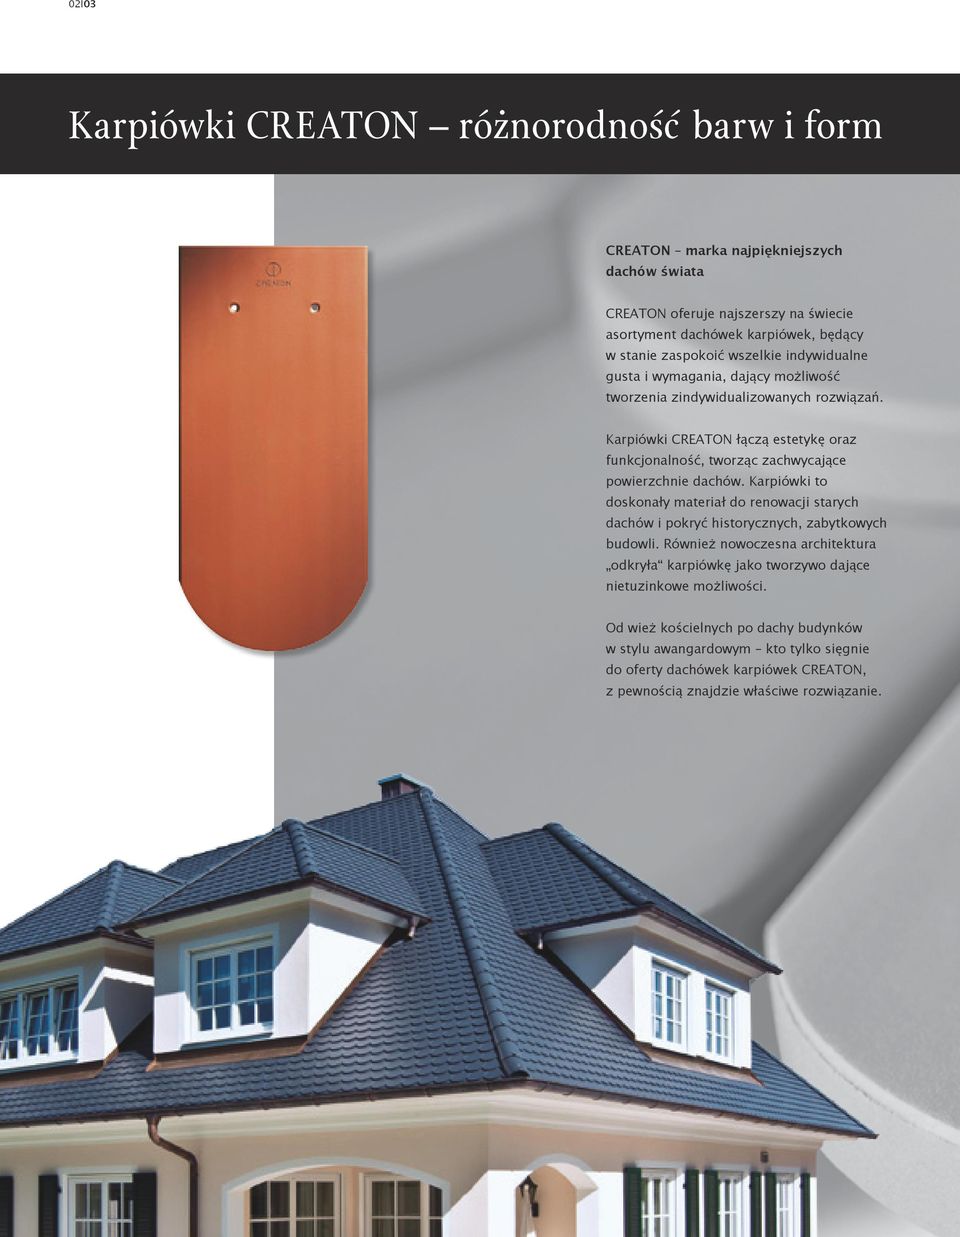 Karpiówki CREATON łączą estetykę oraz funkcjonalność, tworząc zachwycające powierzchnie dachów.